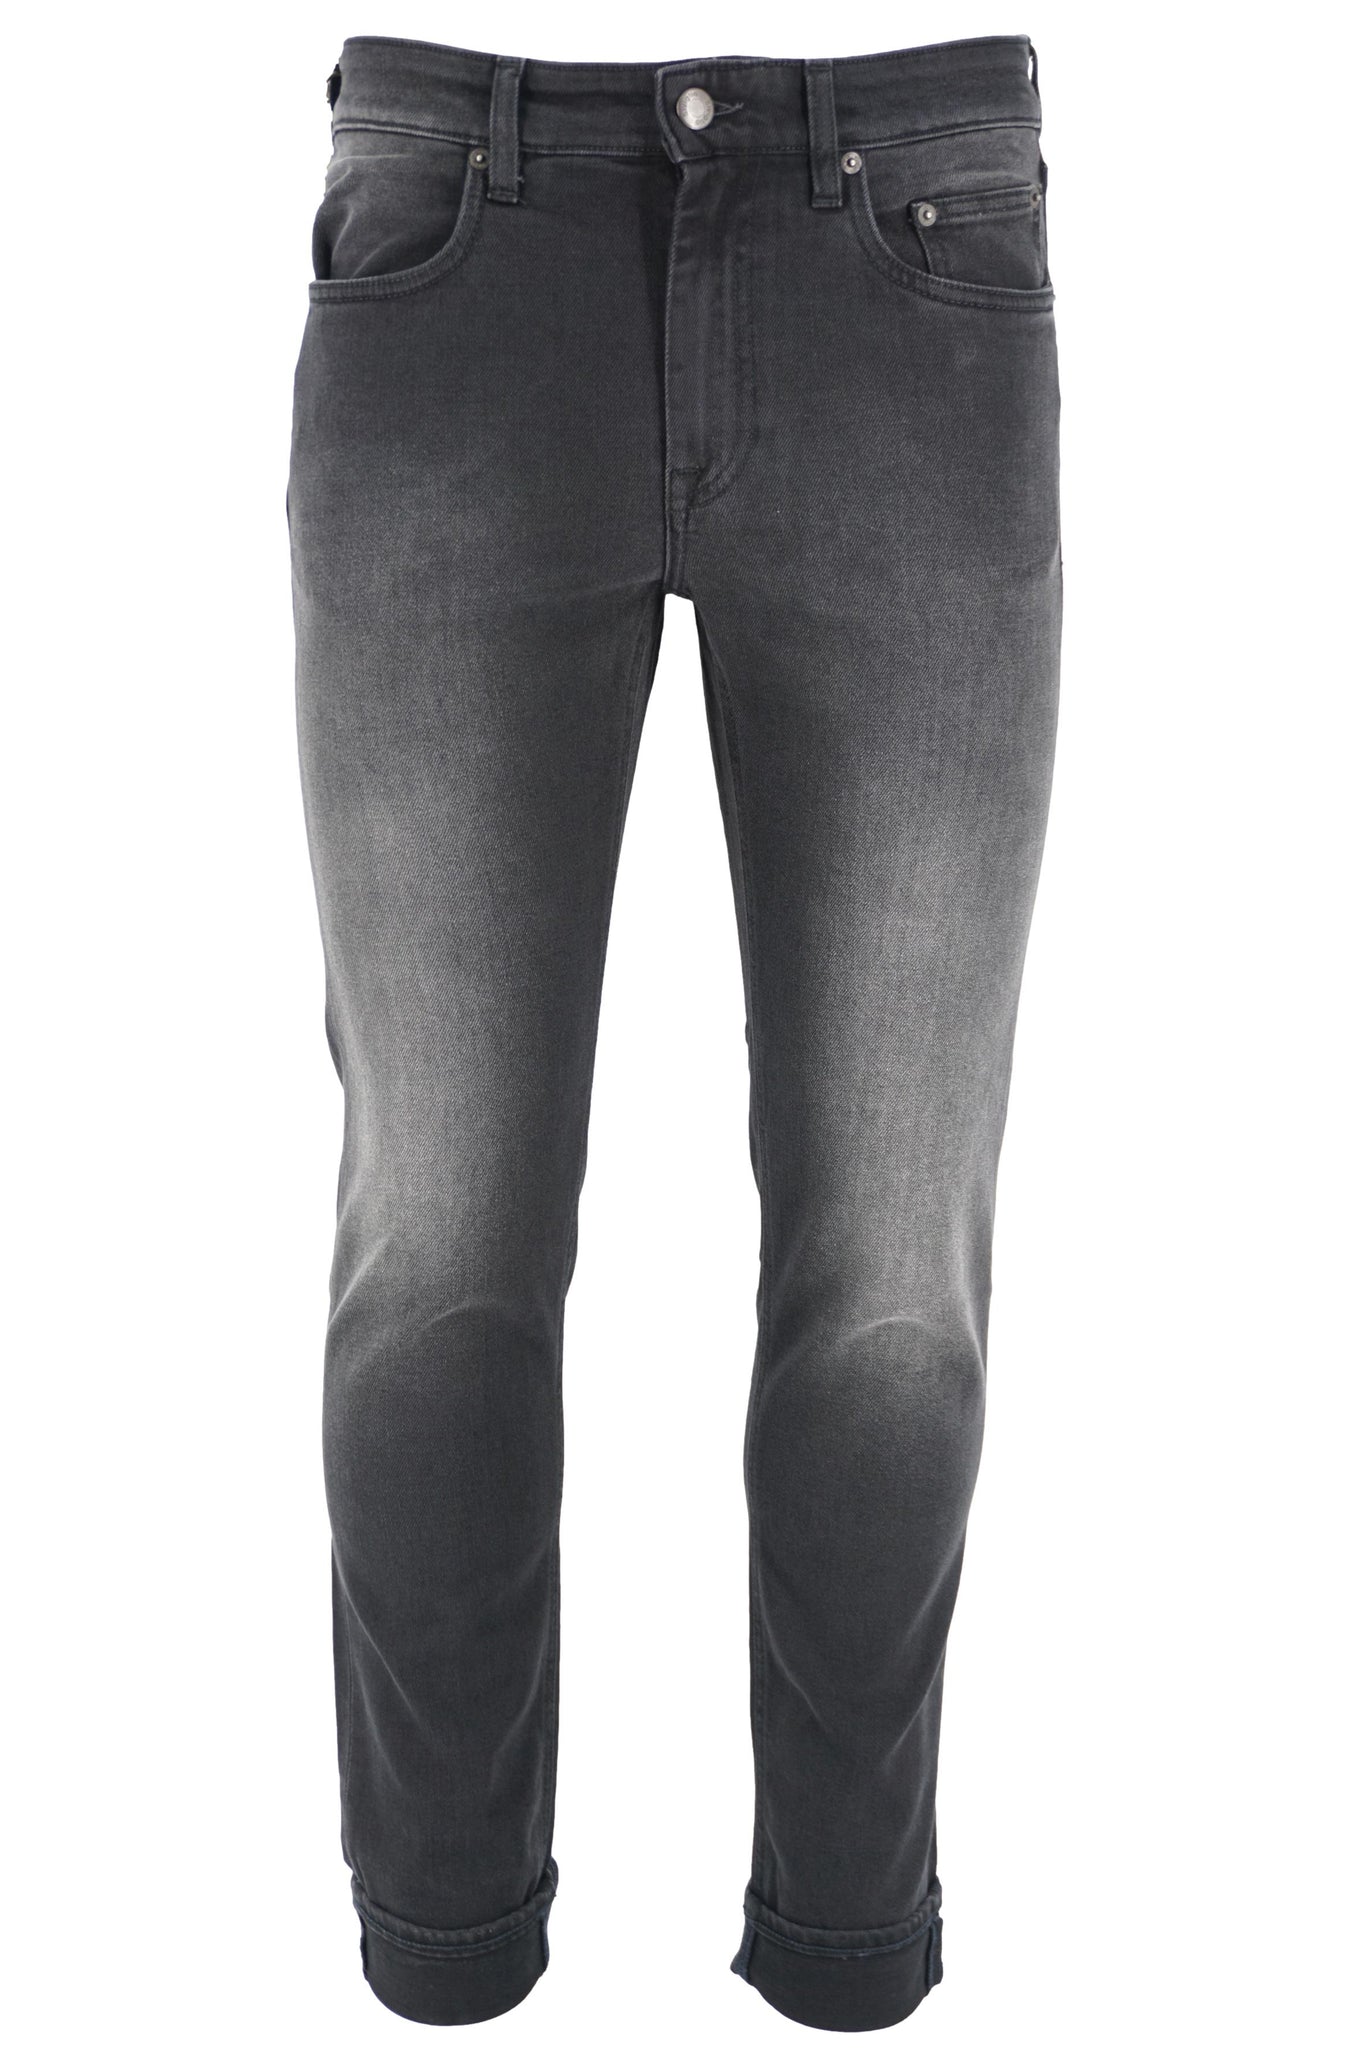 Jeans Scuro Slim Fit / Nero - Ideal Moda